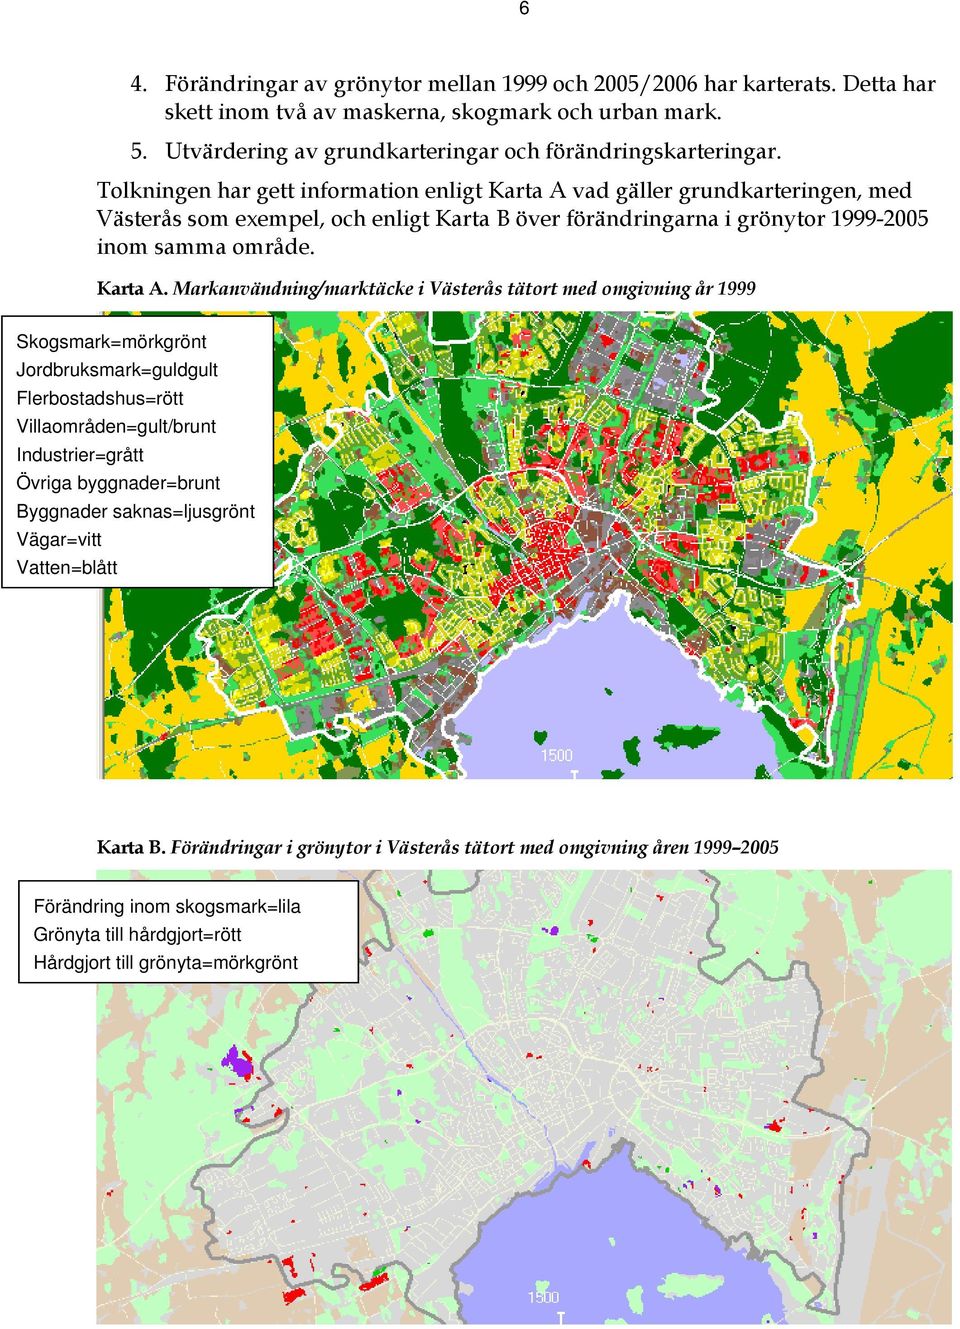 vad gäller grundkarteringen, med Västerås som exempel, och enligt Karta B över förändringarna i grönytor 1999-2005 inom samma område. Karta A.